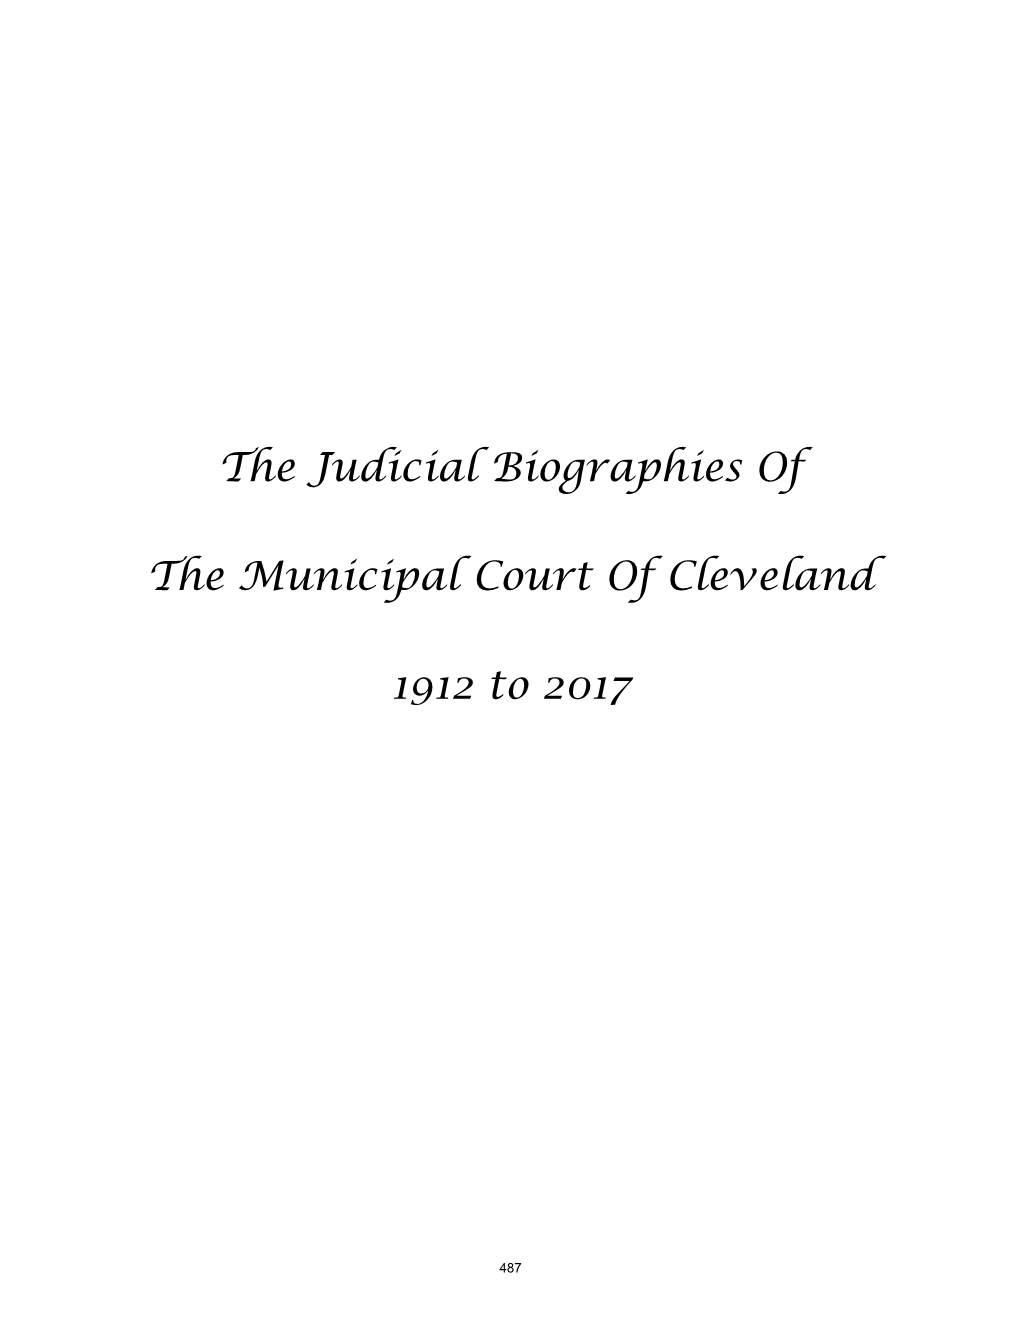 Judicial Biographies 1912